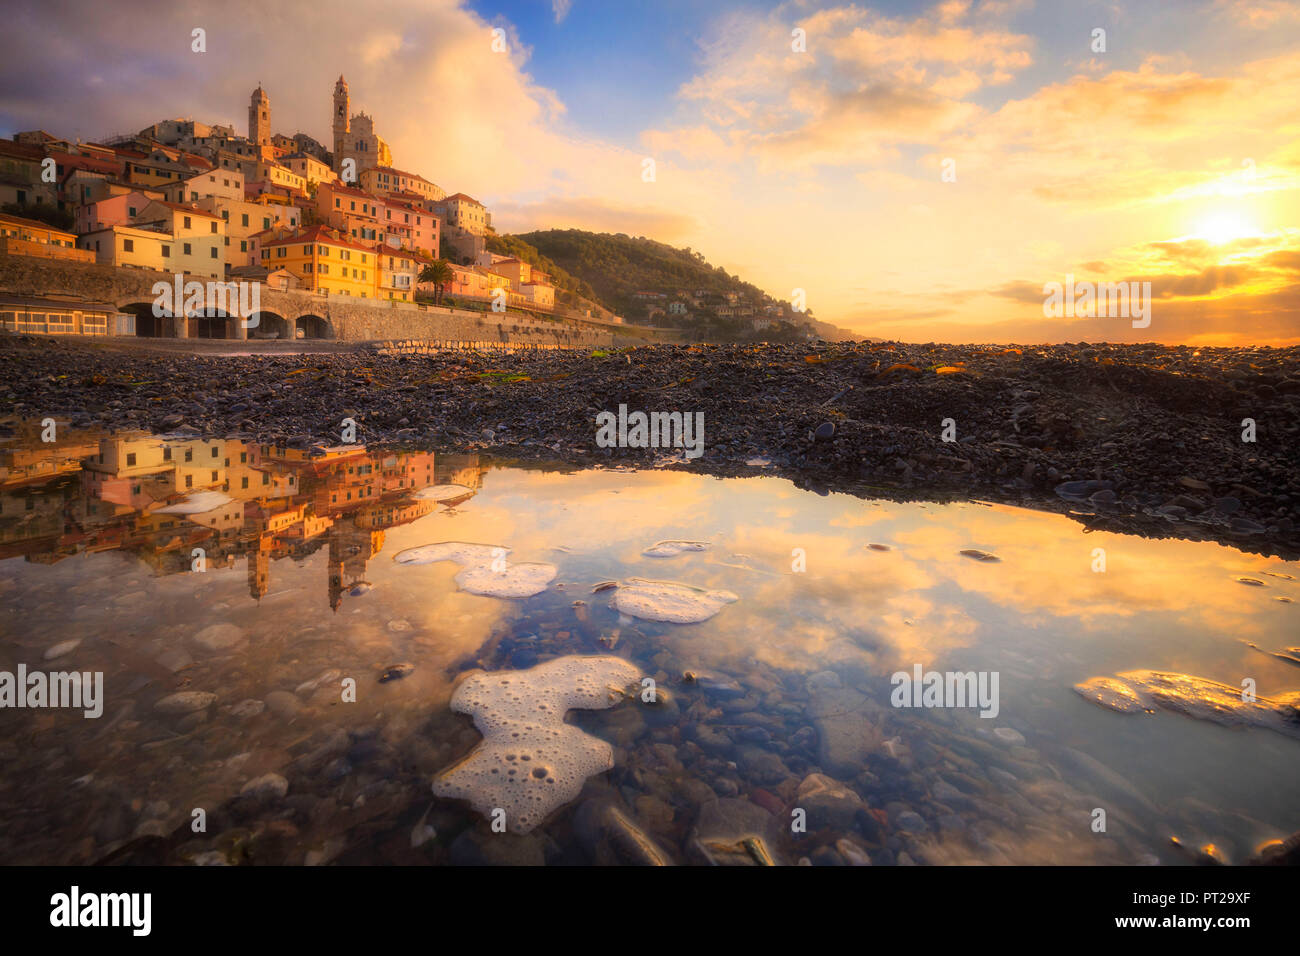 Il villaggio è riflessa in una pozzanghera sulla spiaggia durante il Sunrise, Cervo, provincia di Imperia, Liguria, Italia, Europa Foto Stock